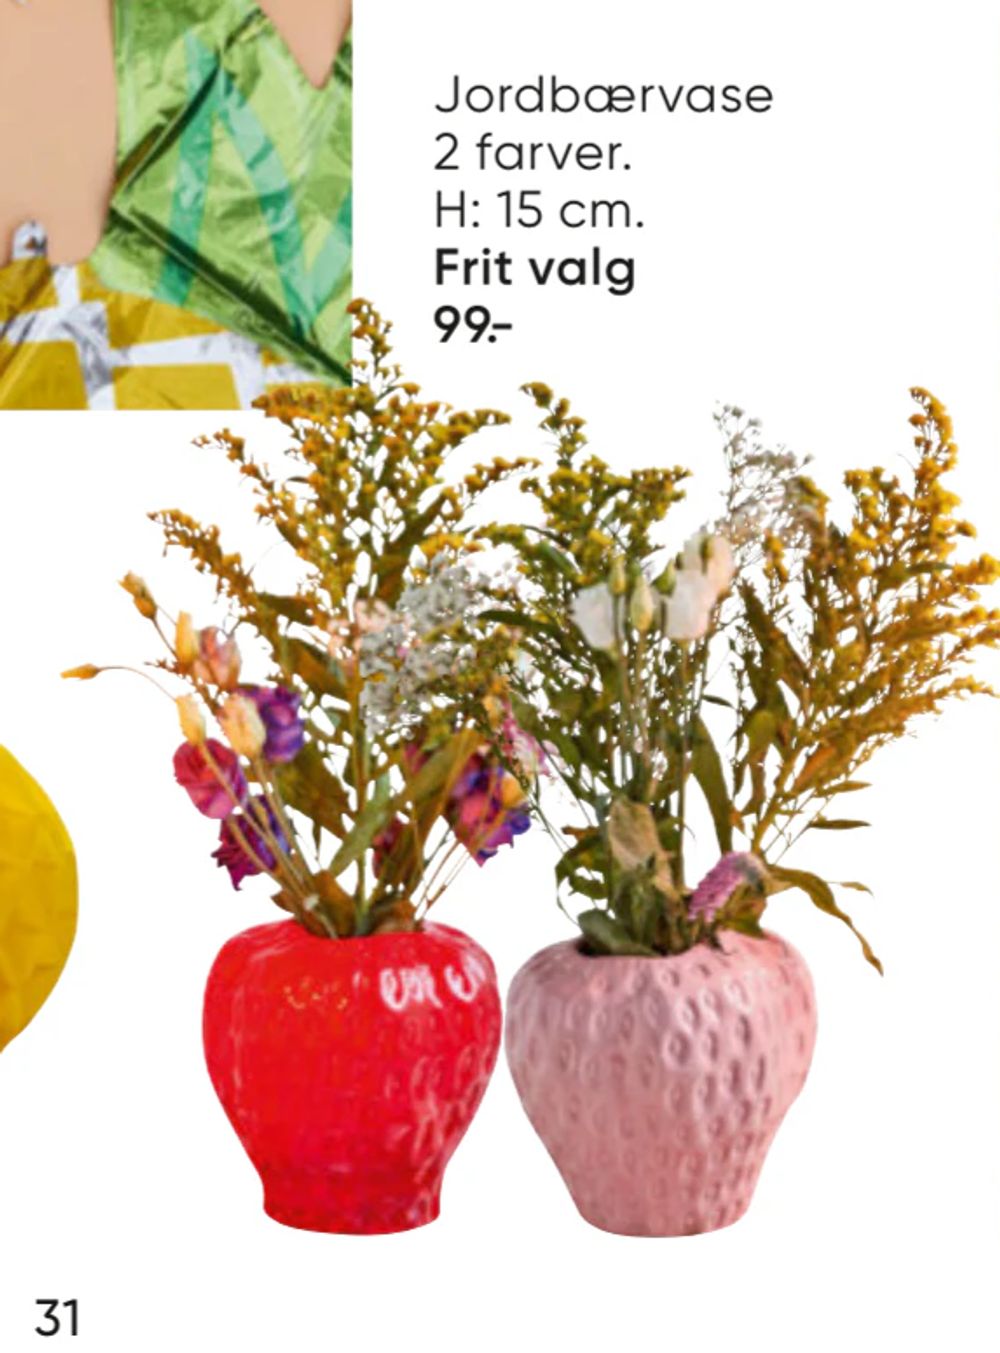 Tilbud på Jordbærvase 2 farver fra Bilka til 99 kr.